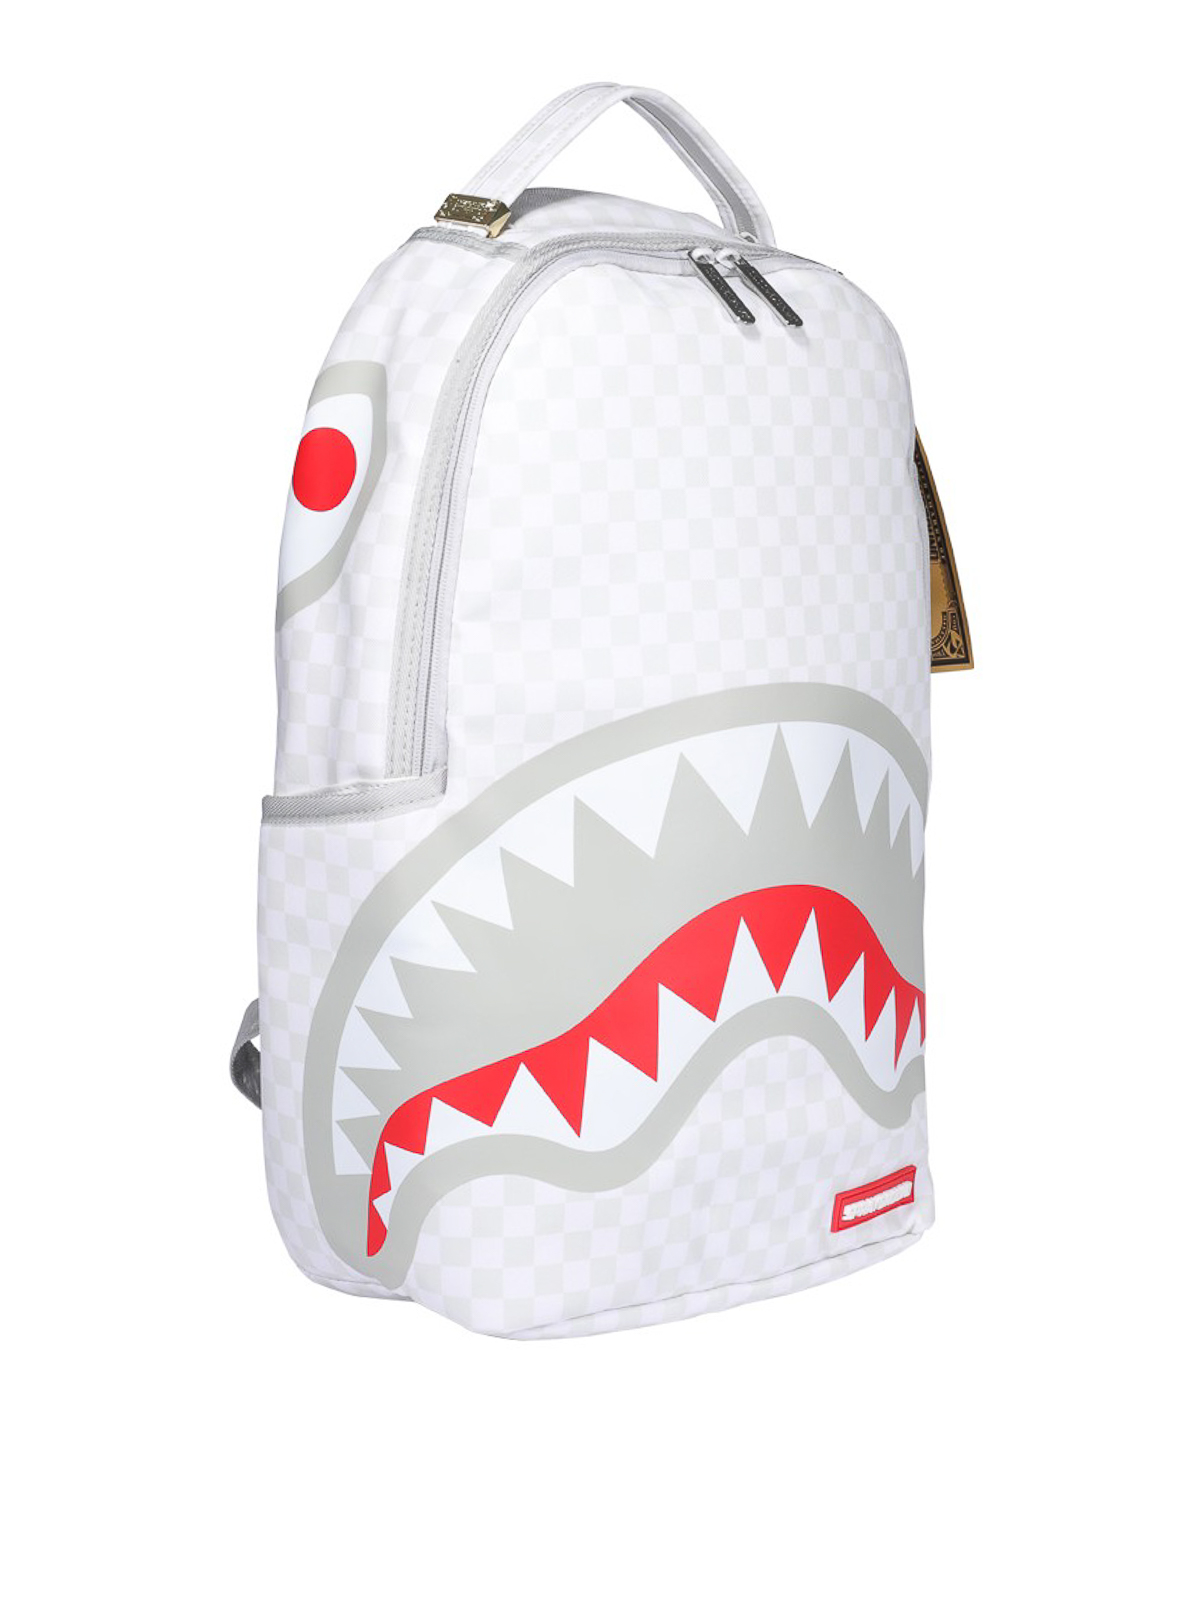 Sprayground Shark backpack  Shark backpack, Sprayground, Backpacks